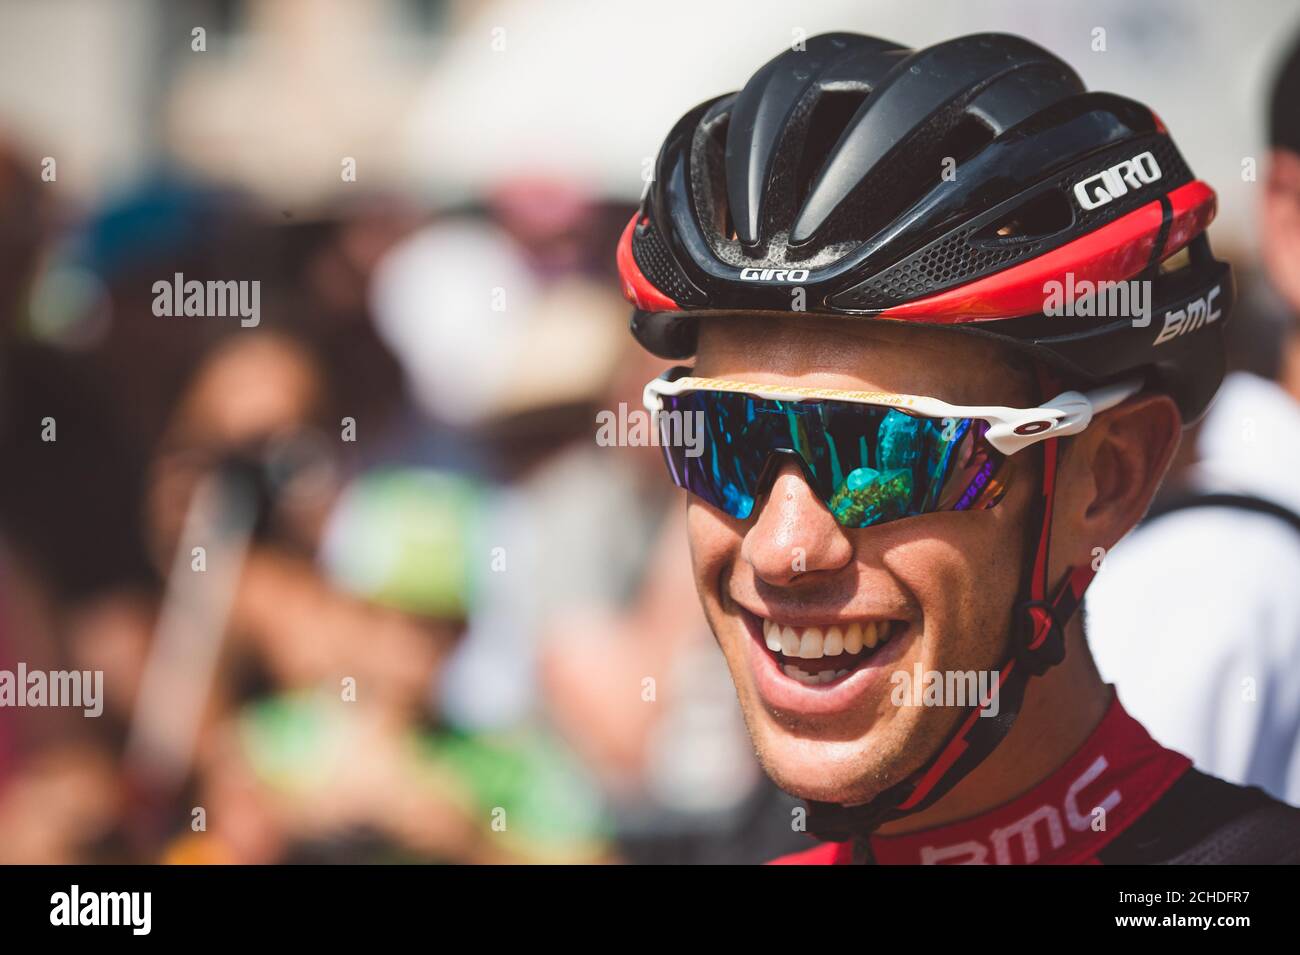 7 luglio 2017, Francia; Ciclismo, Tour de France 7° tappa: Richie Porte. Foto Stock